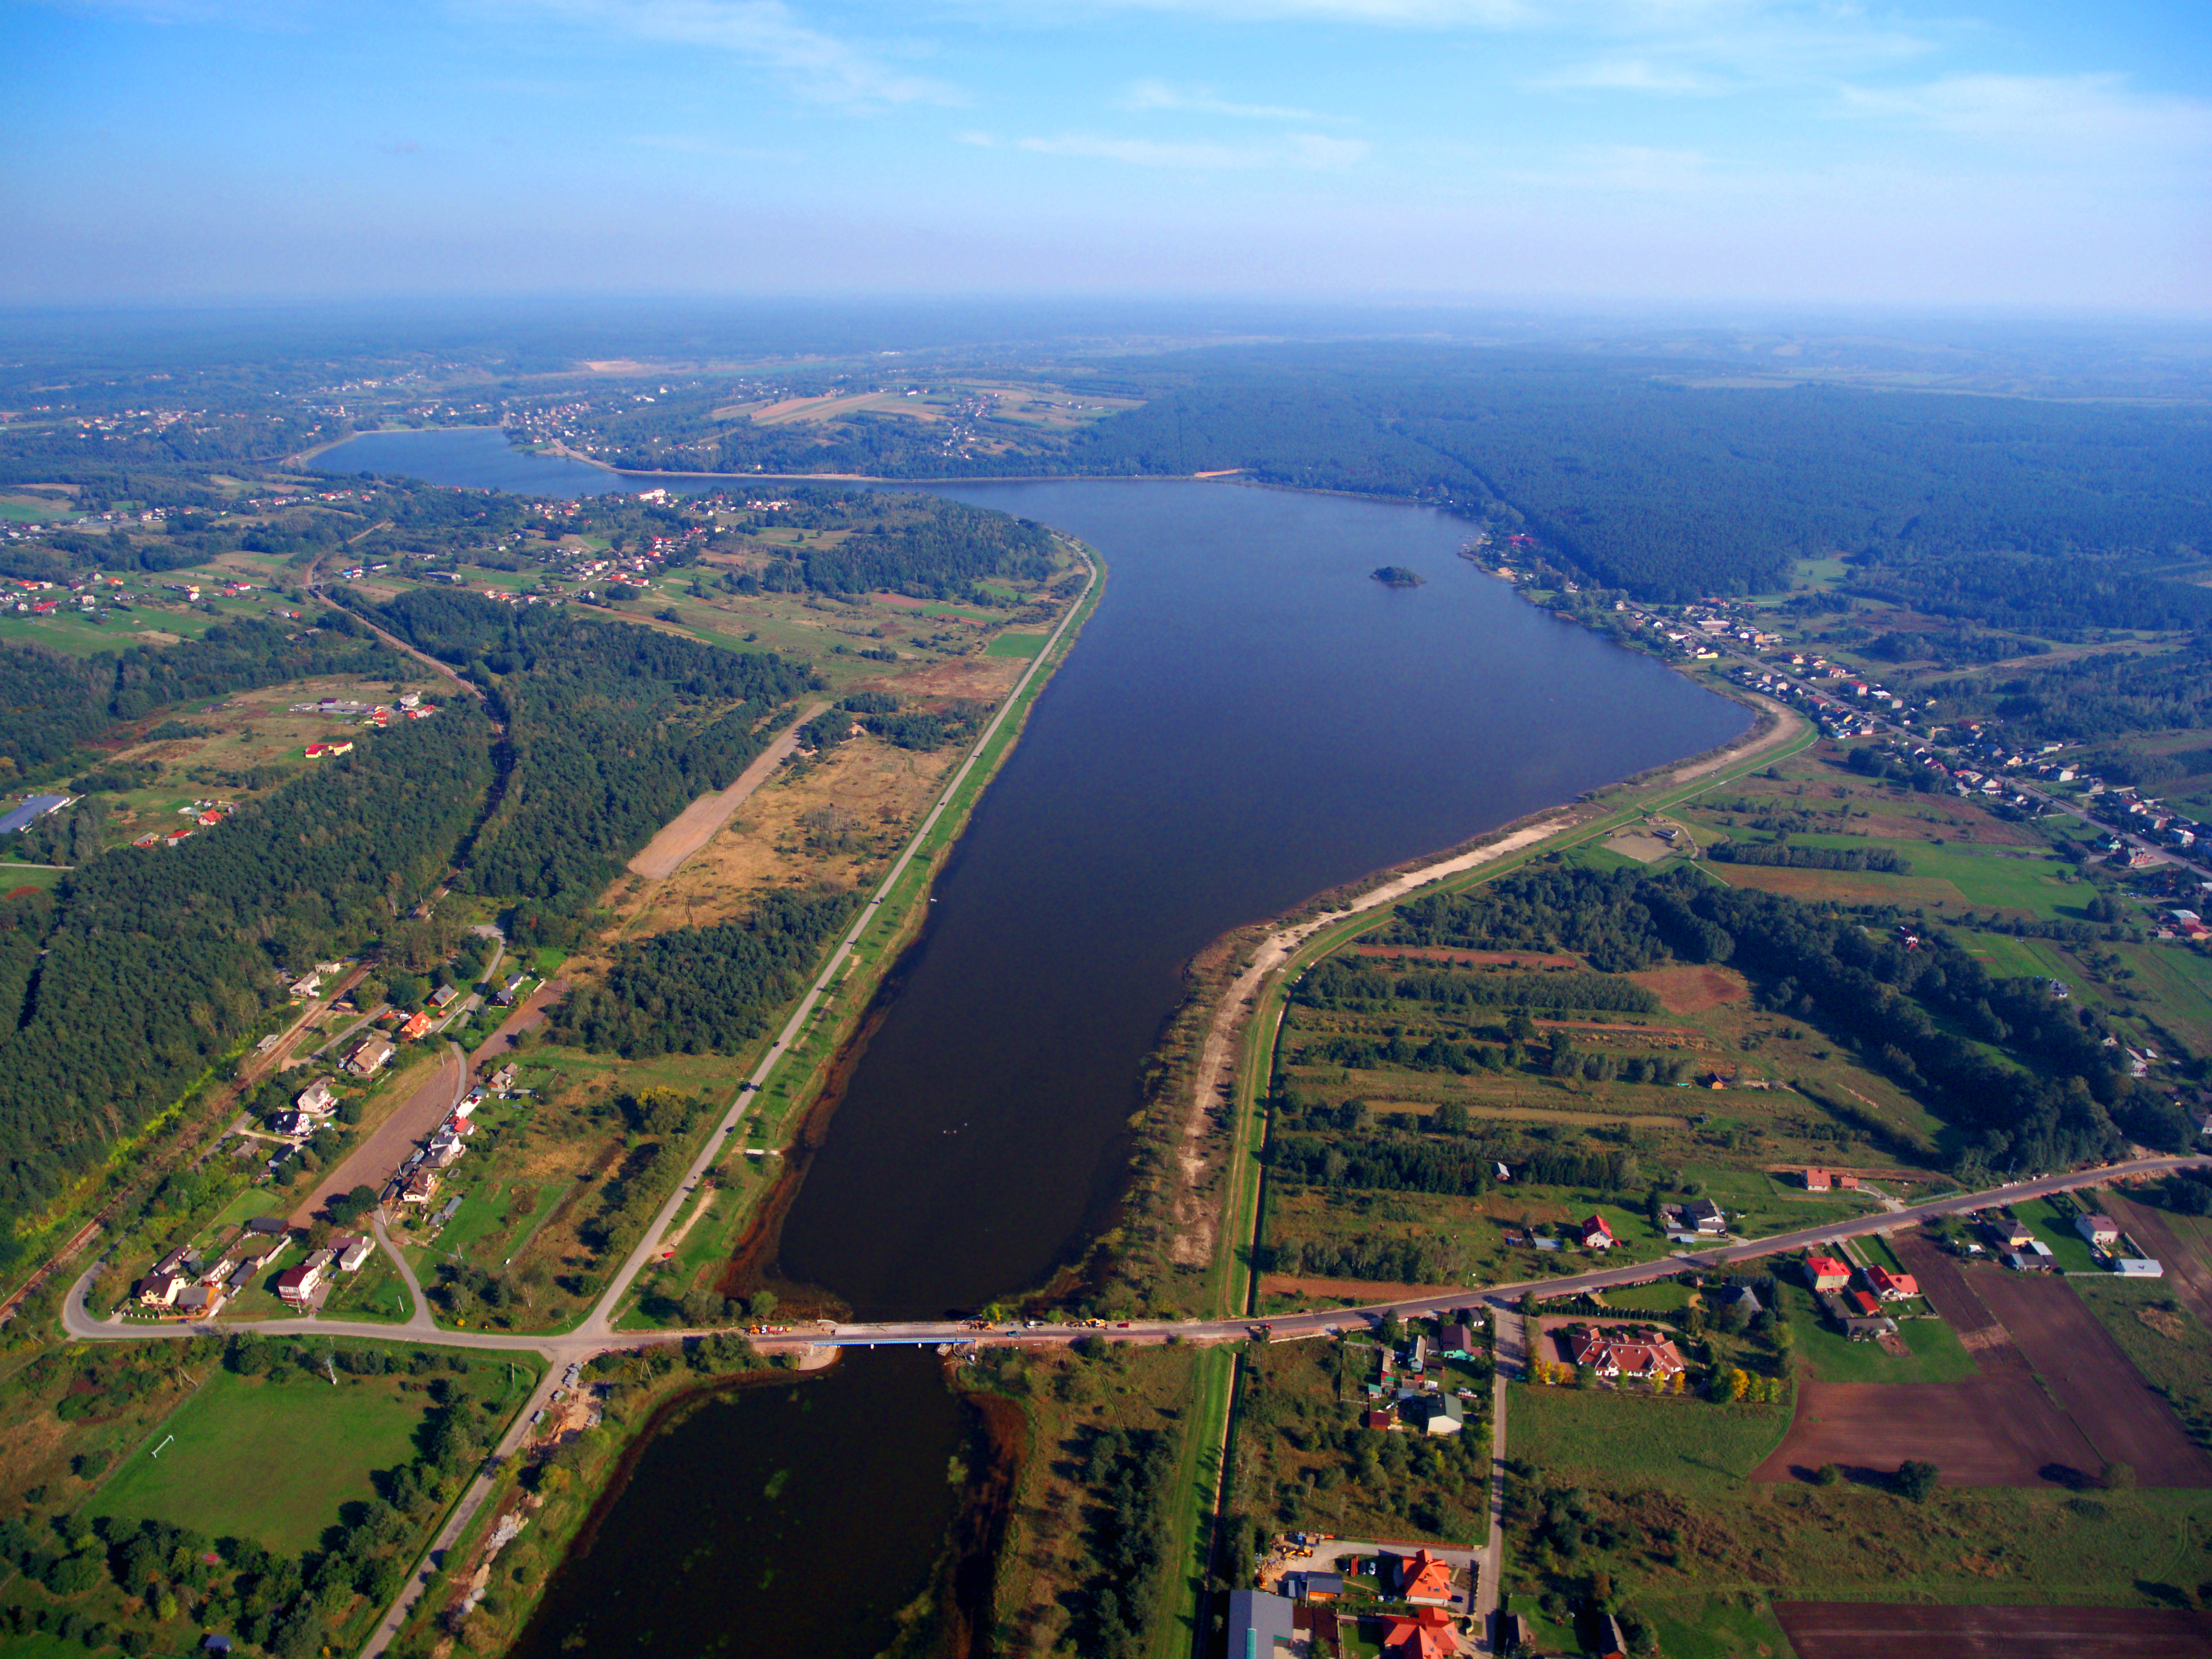 Staw na rzece Kamiennej, obecnie Zalew Brodzki